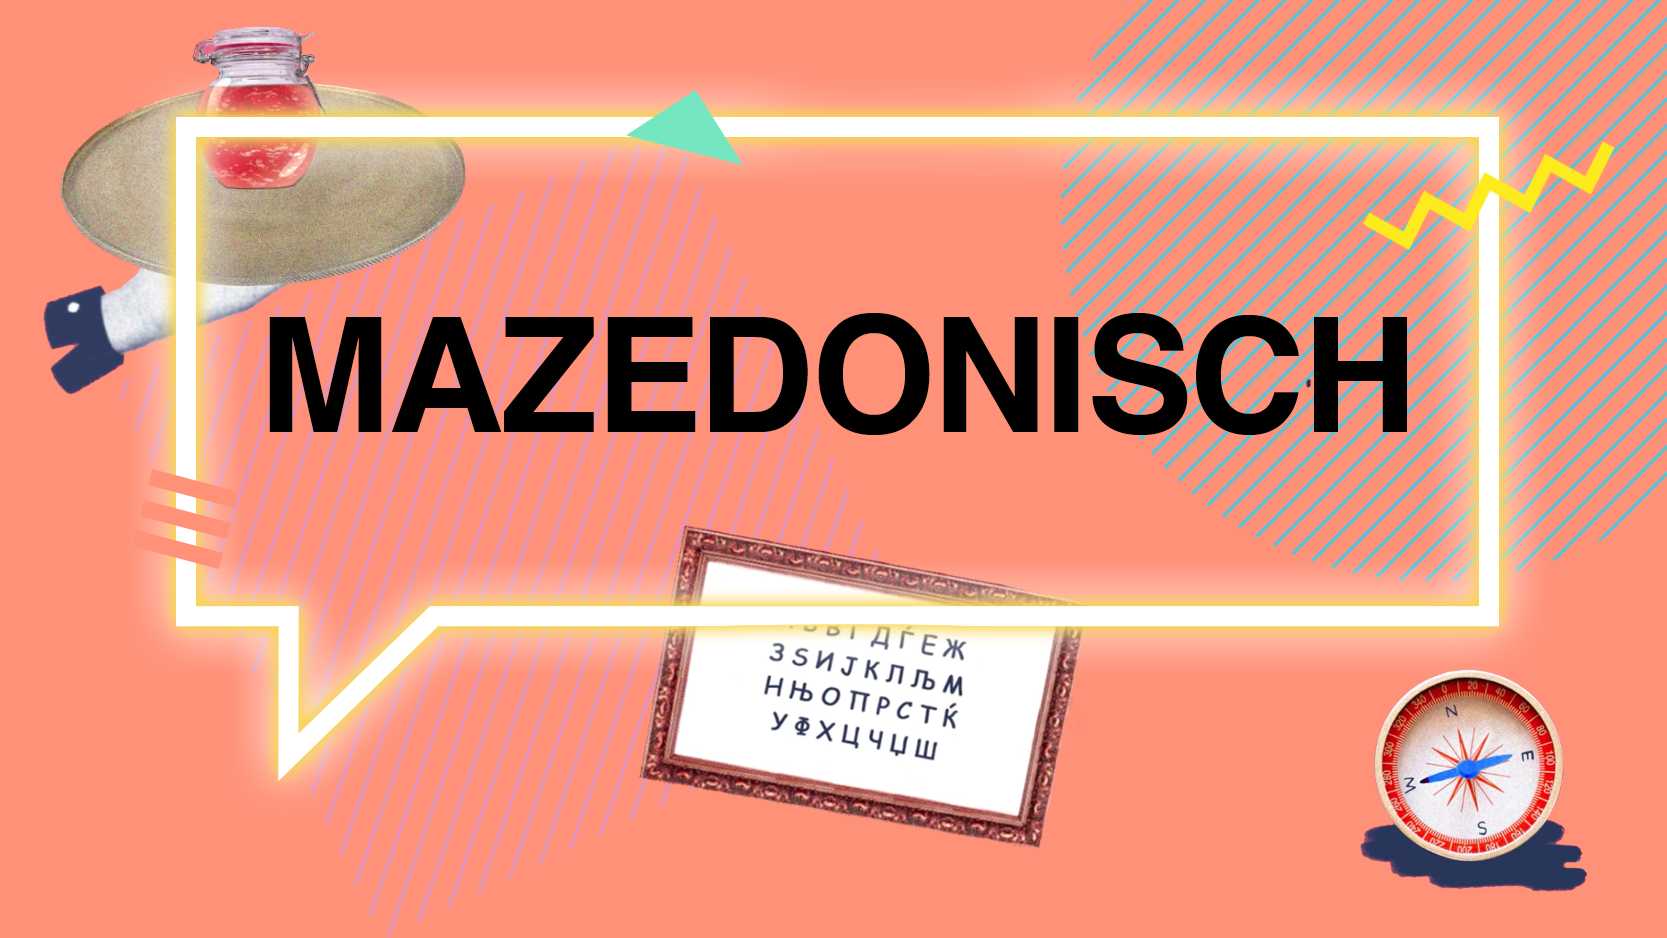 Mazedonisch